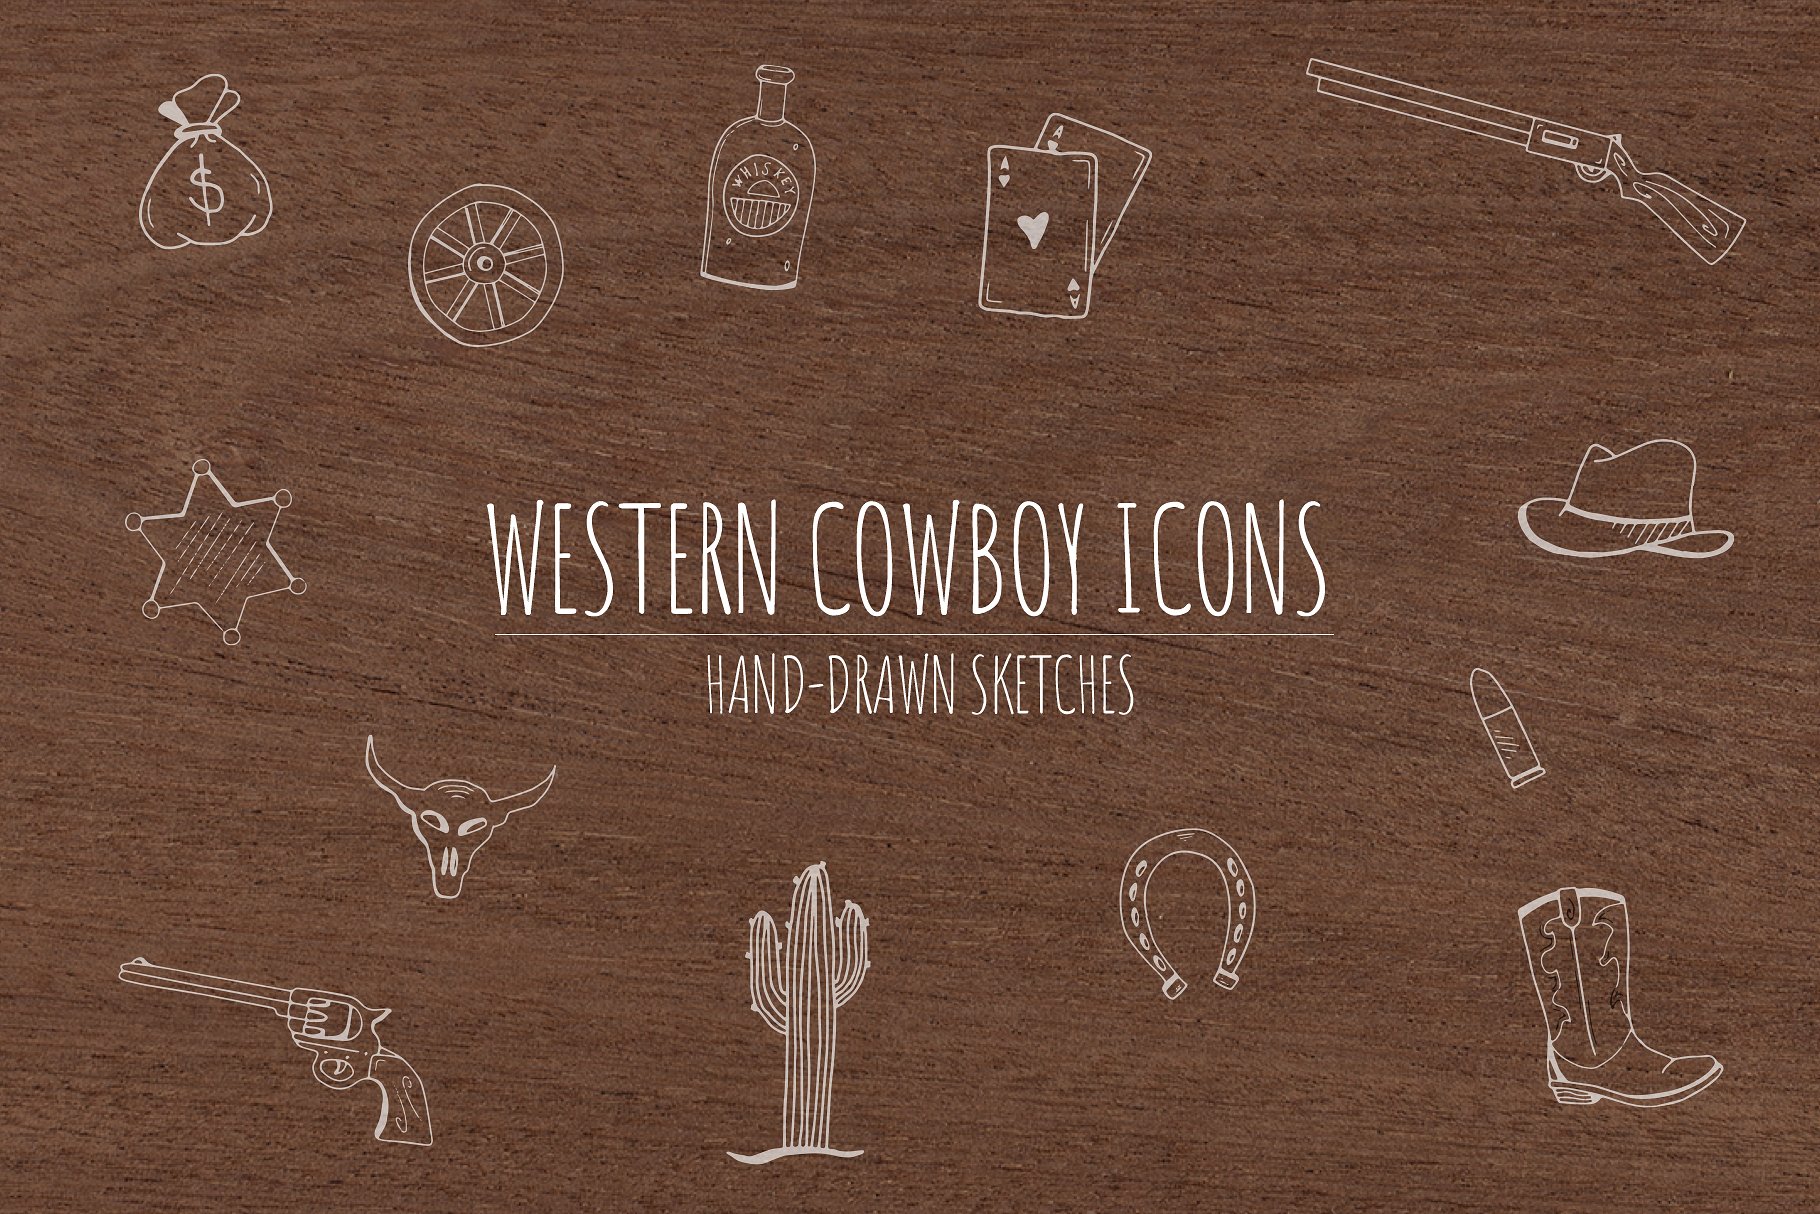 手绘西部牛仔元素图标素材 Hand-Drawn Western Cowboy Icons - 云瑞设计